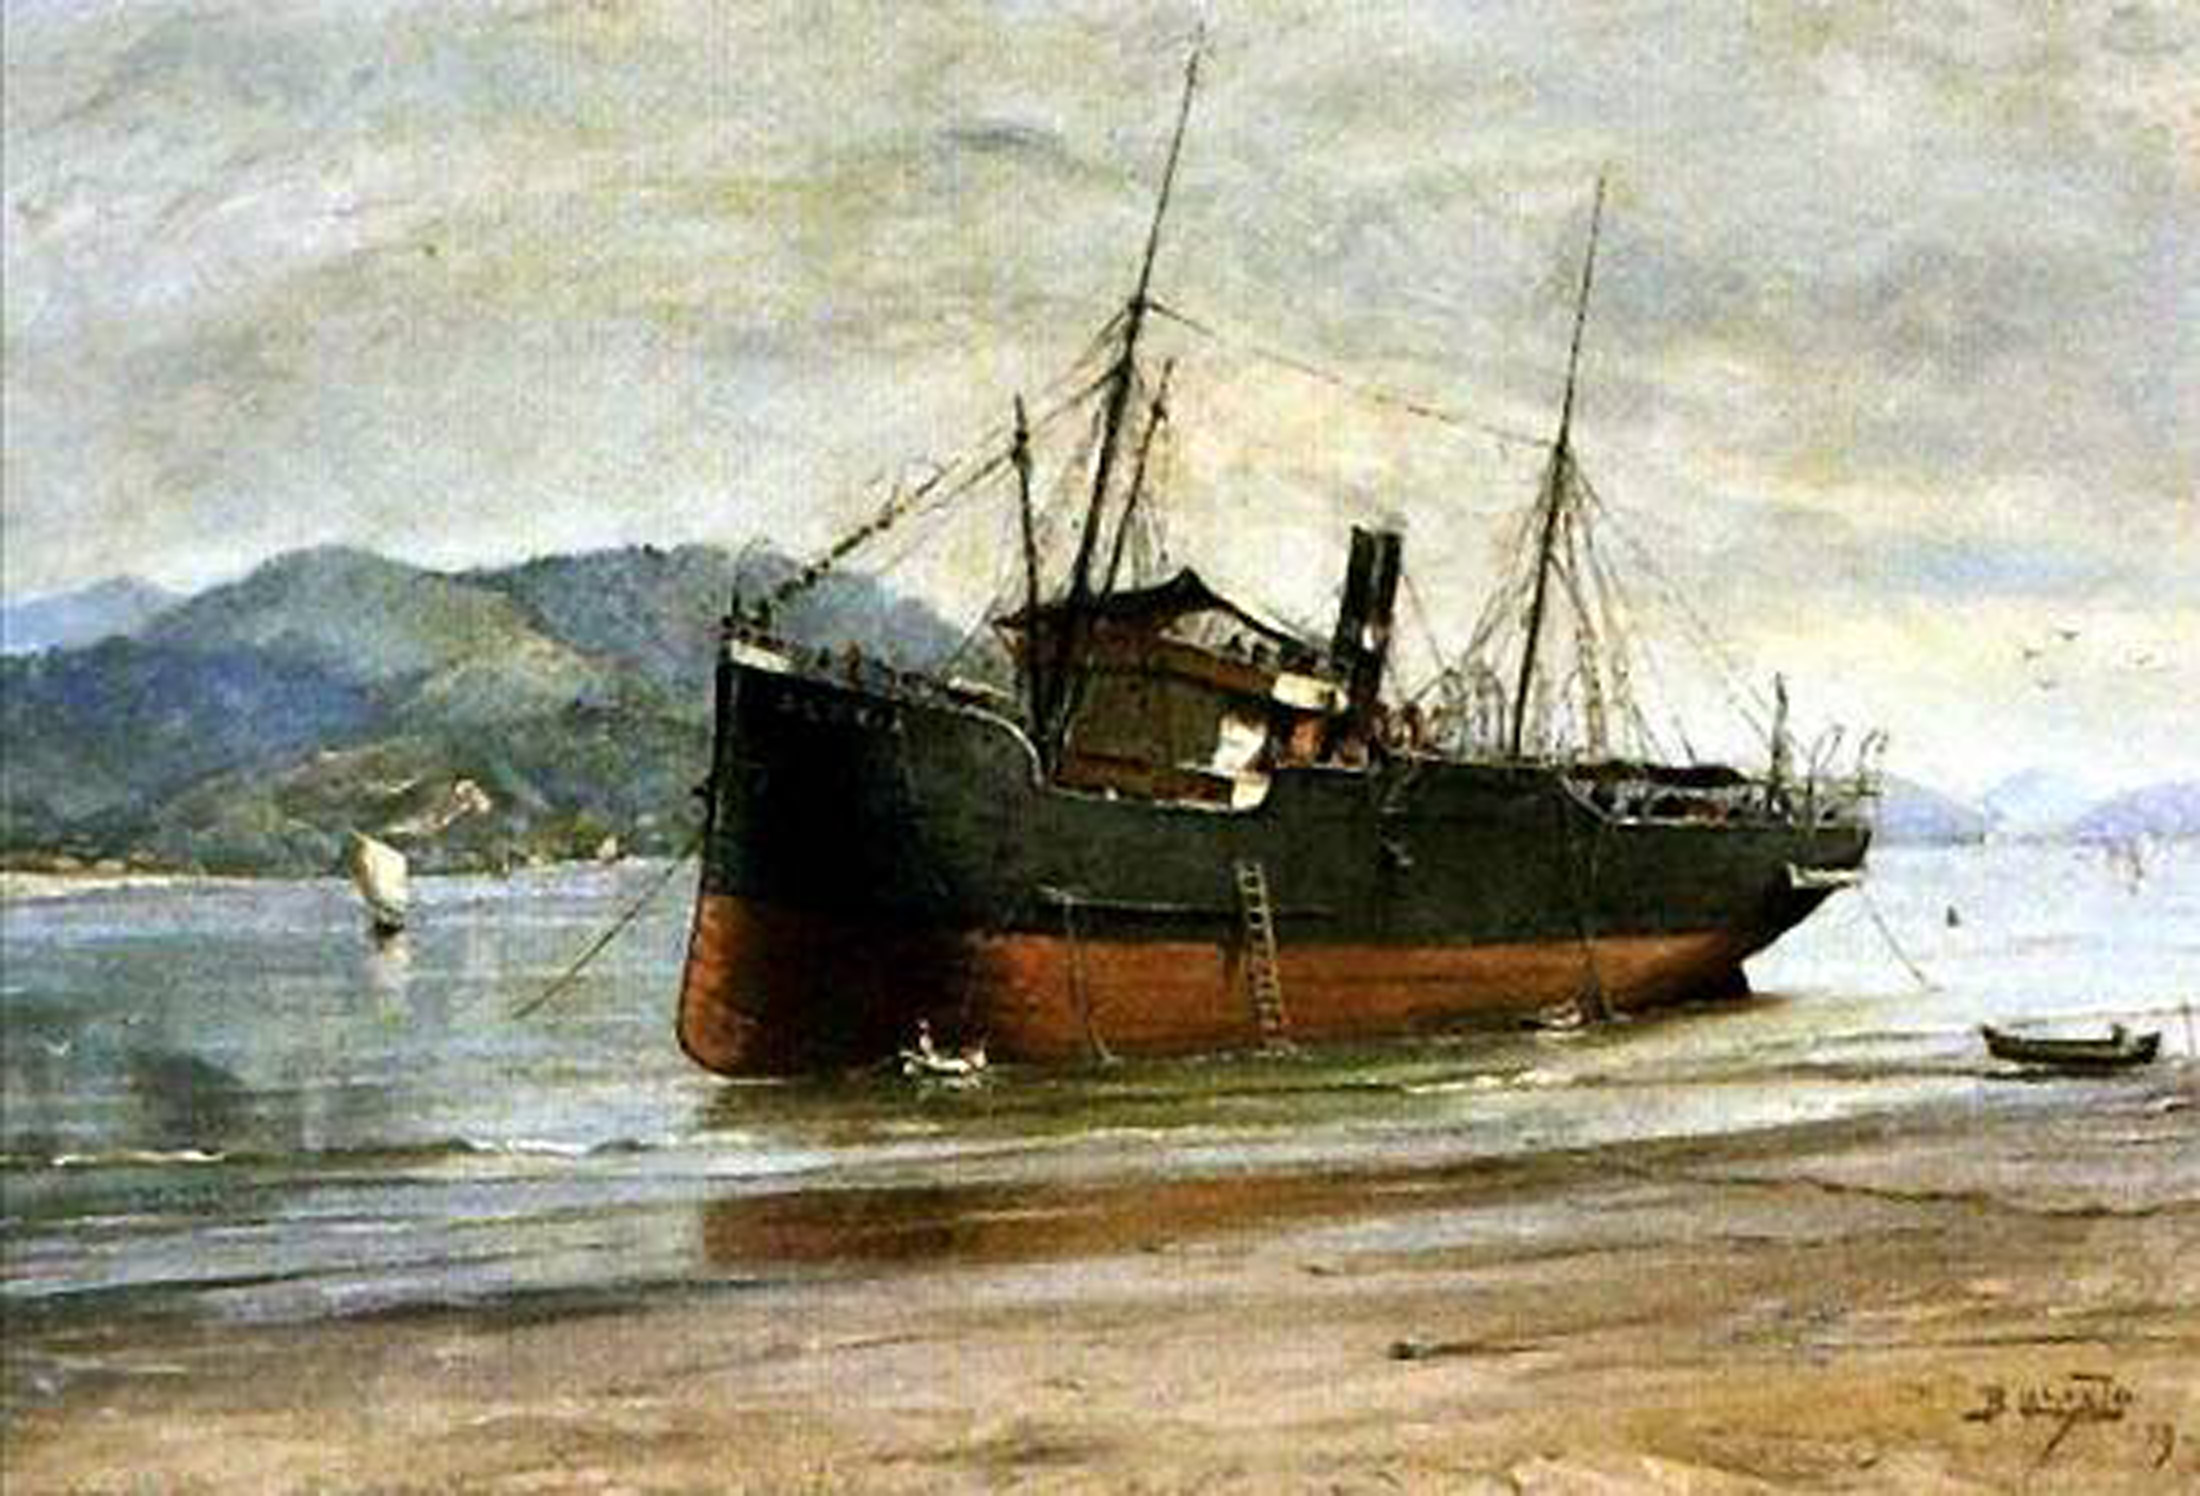 Pintura pode ajudar na busca da história da embarcação (Foto: Reprodução)